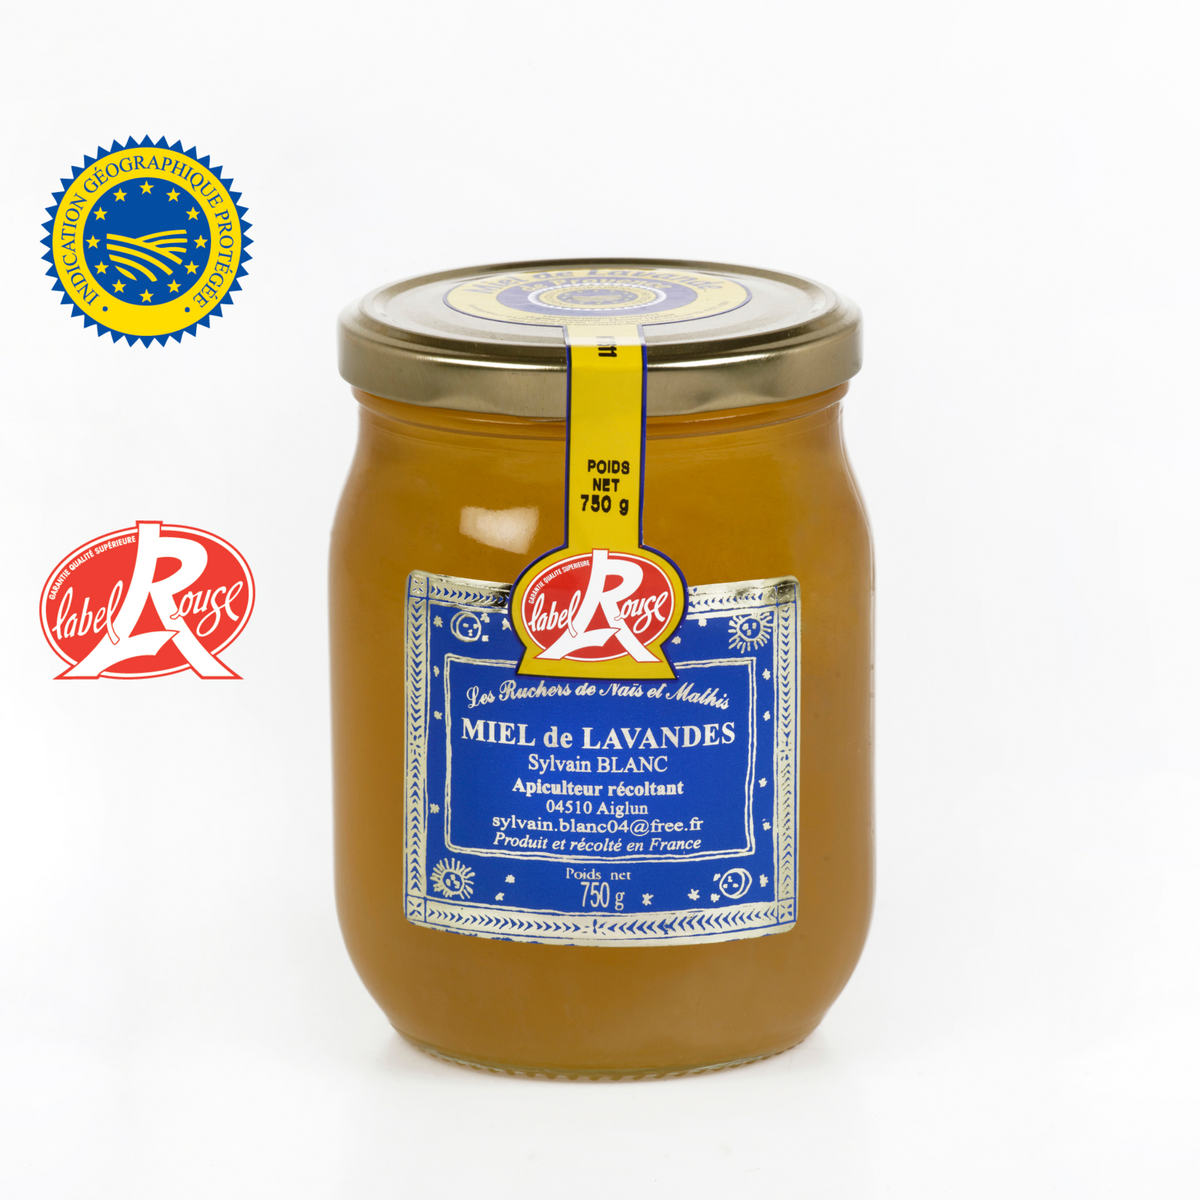 Miel de Lavande Label rouge - Liquide